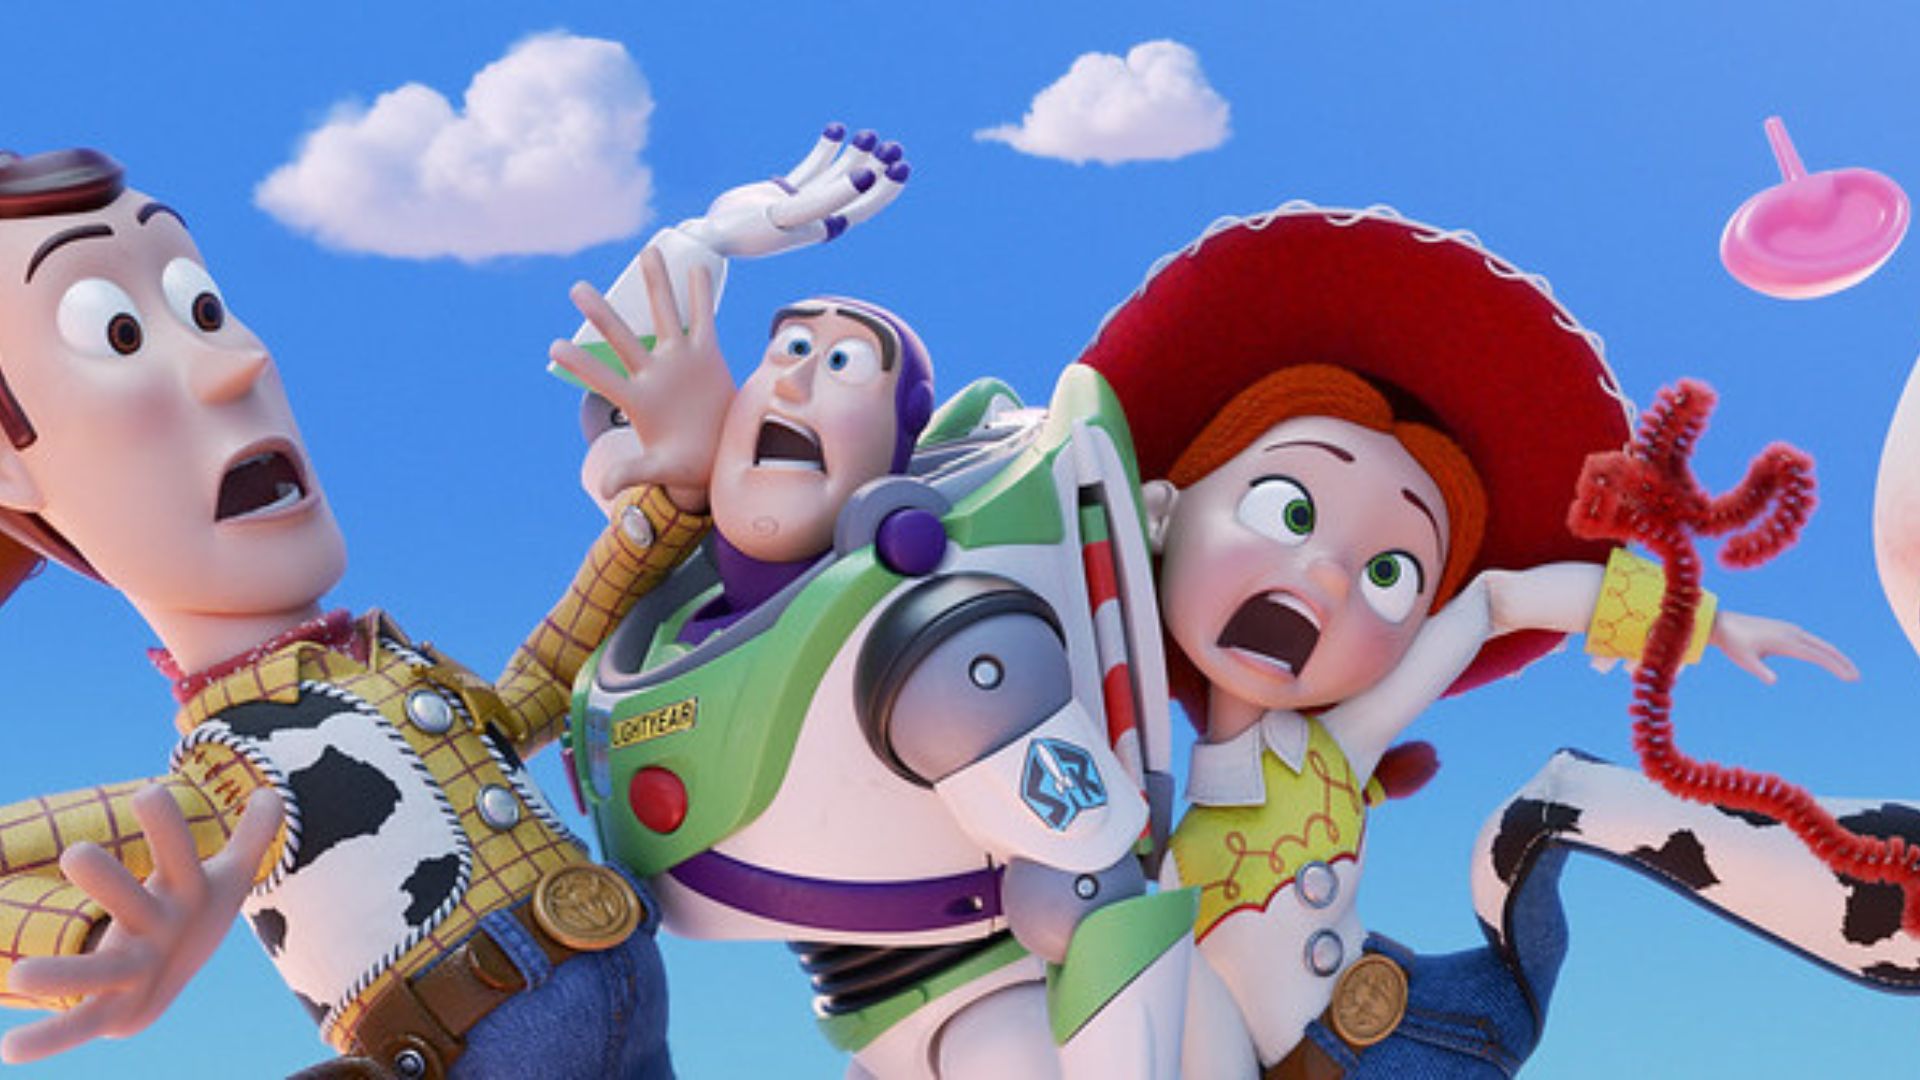 Imagem de Woody, Buzz Lightyear e Jessie caindo do céu com feição apavorada.